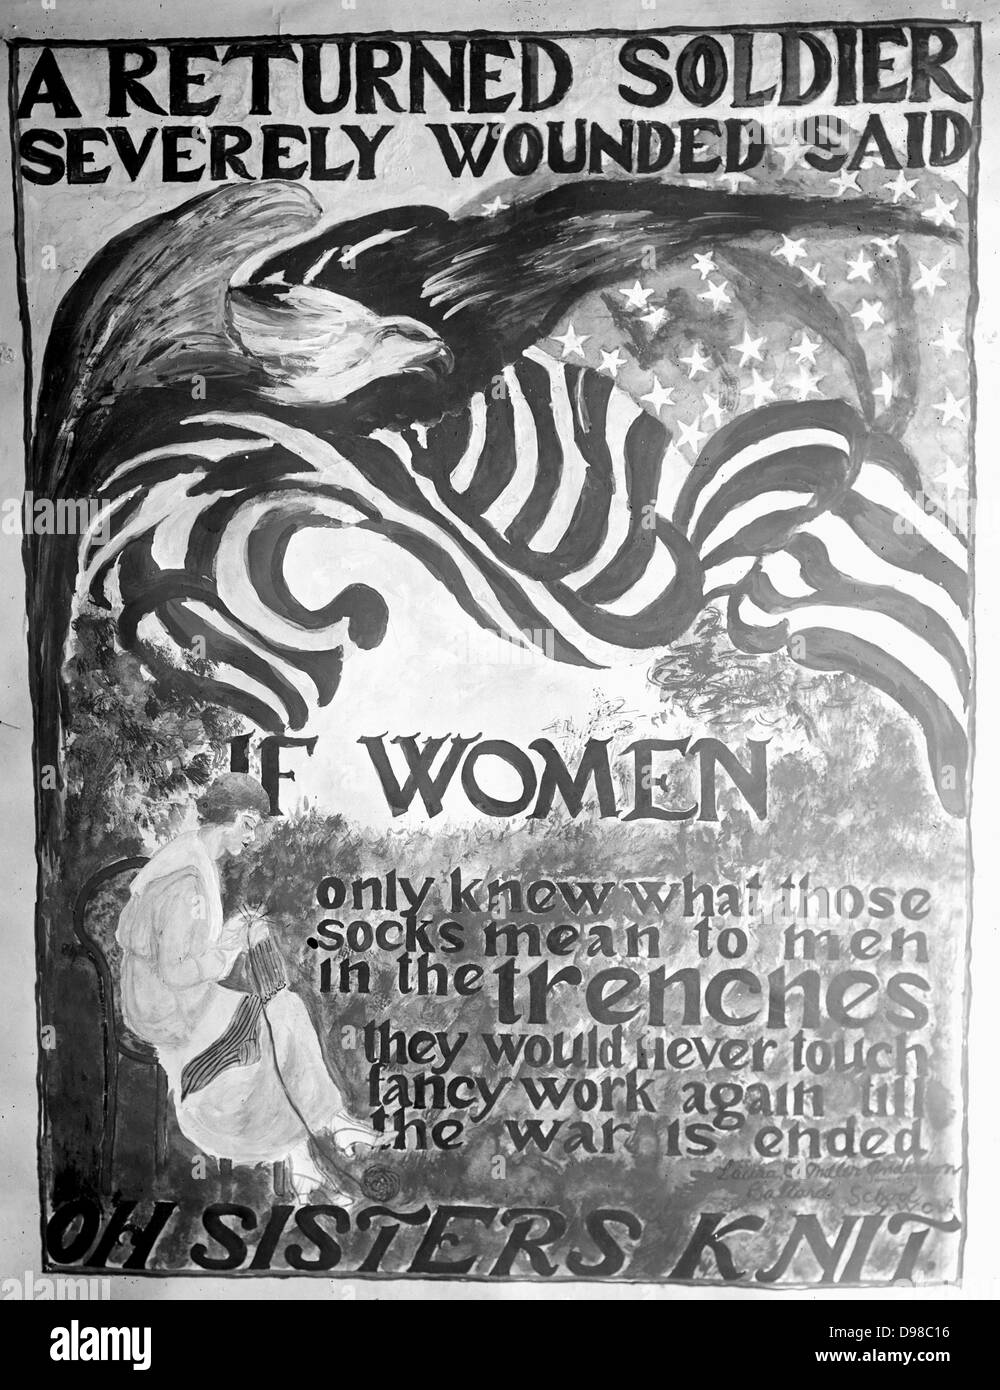 War poster asking women to knit. Stock Photo